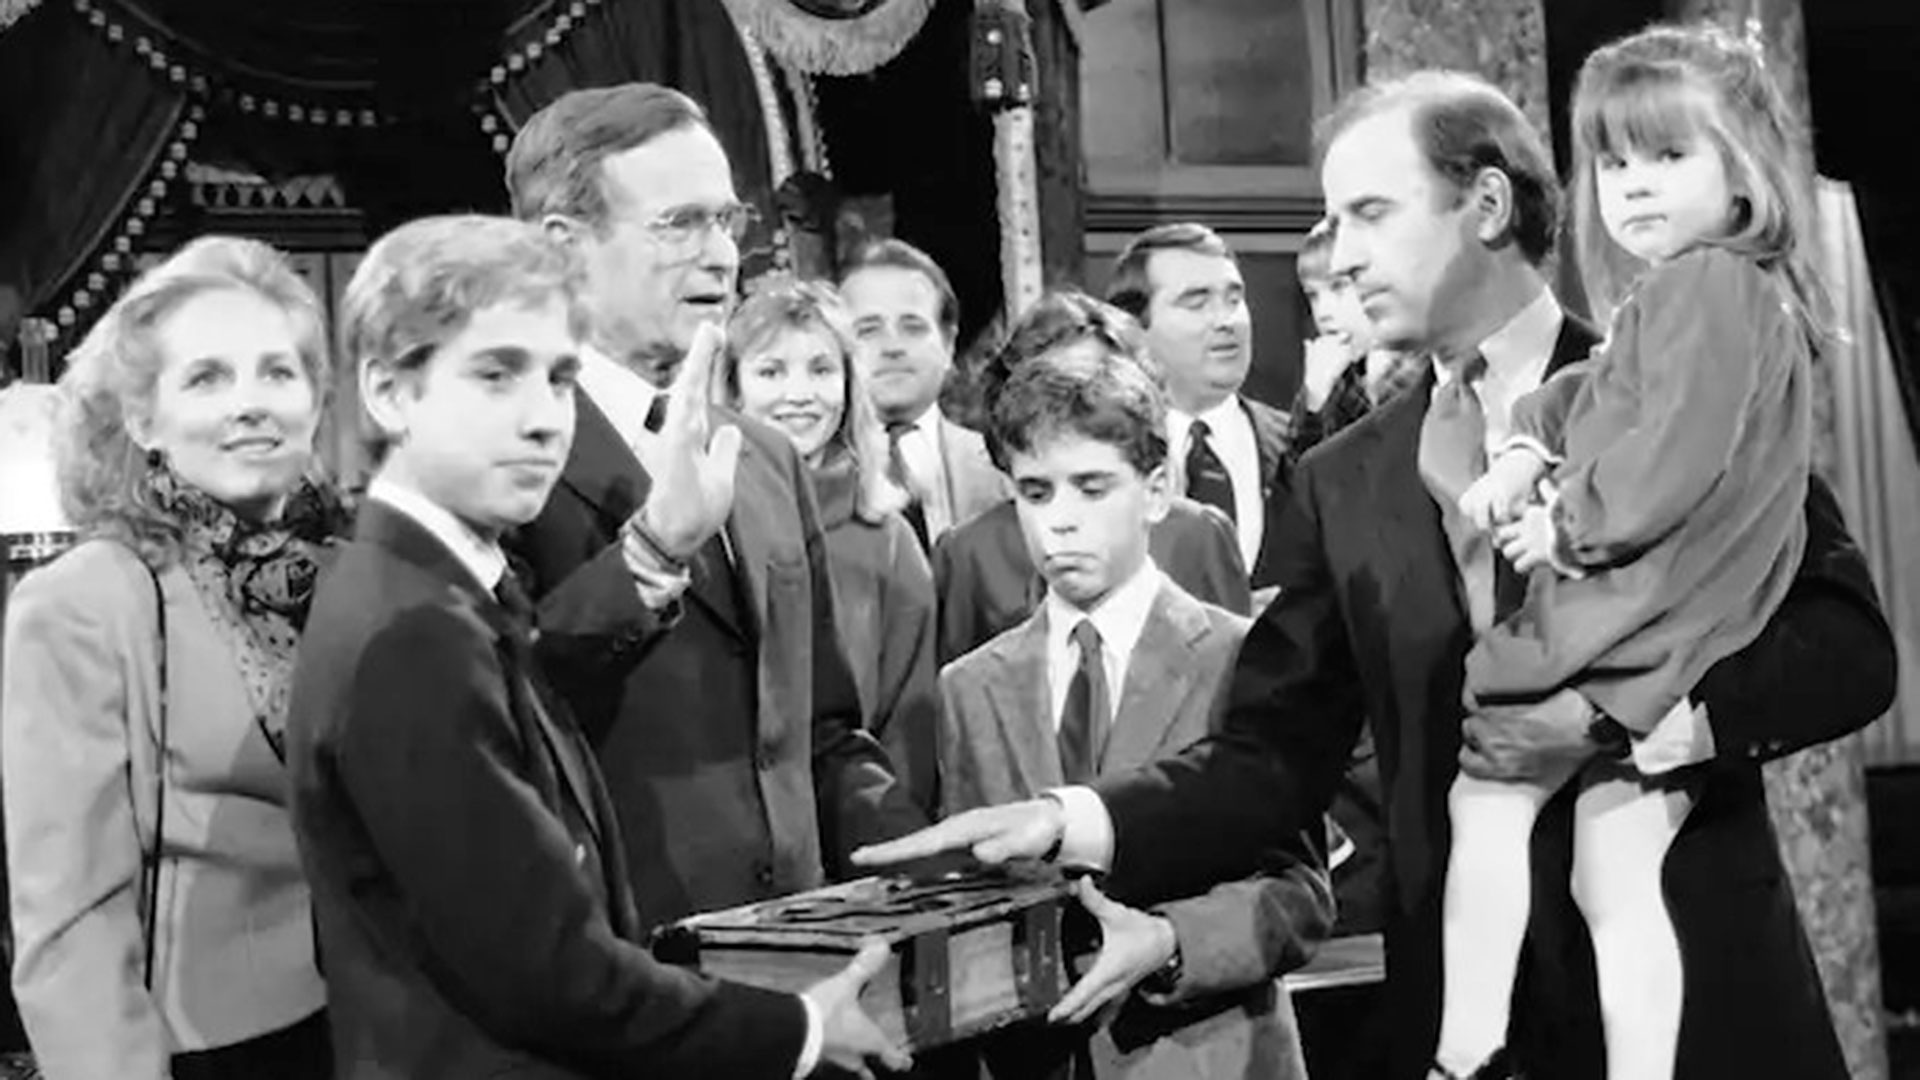 FOTO DE ARCHIVO: El entonces senador Joe Biden sostiene a su hija Ashley mientras toma juramento con el vicepresidente George H.W. Bush el 3 de enero de 1985. (Lana Harris/AP)